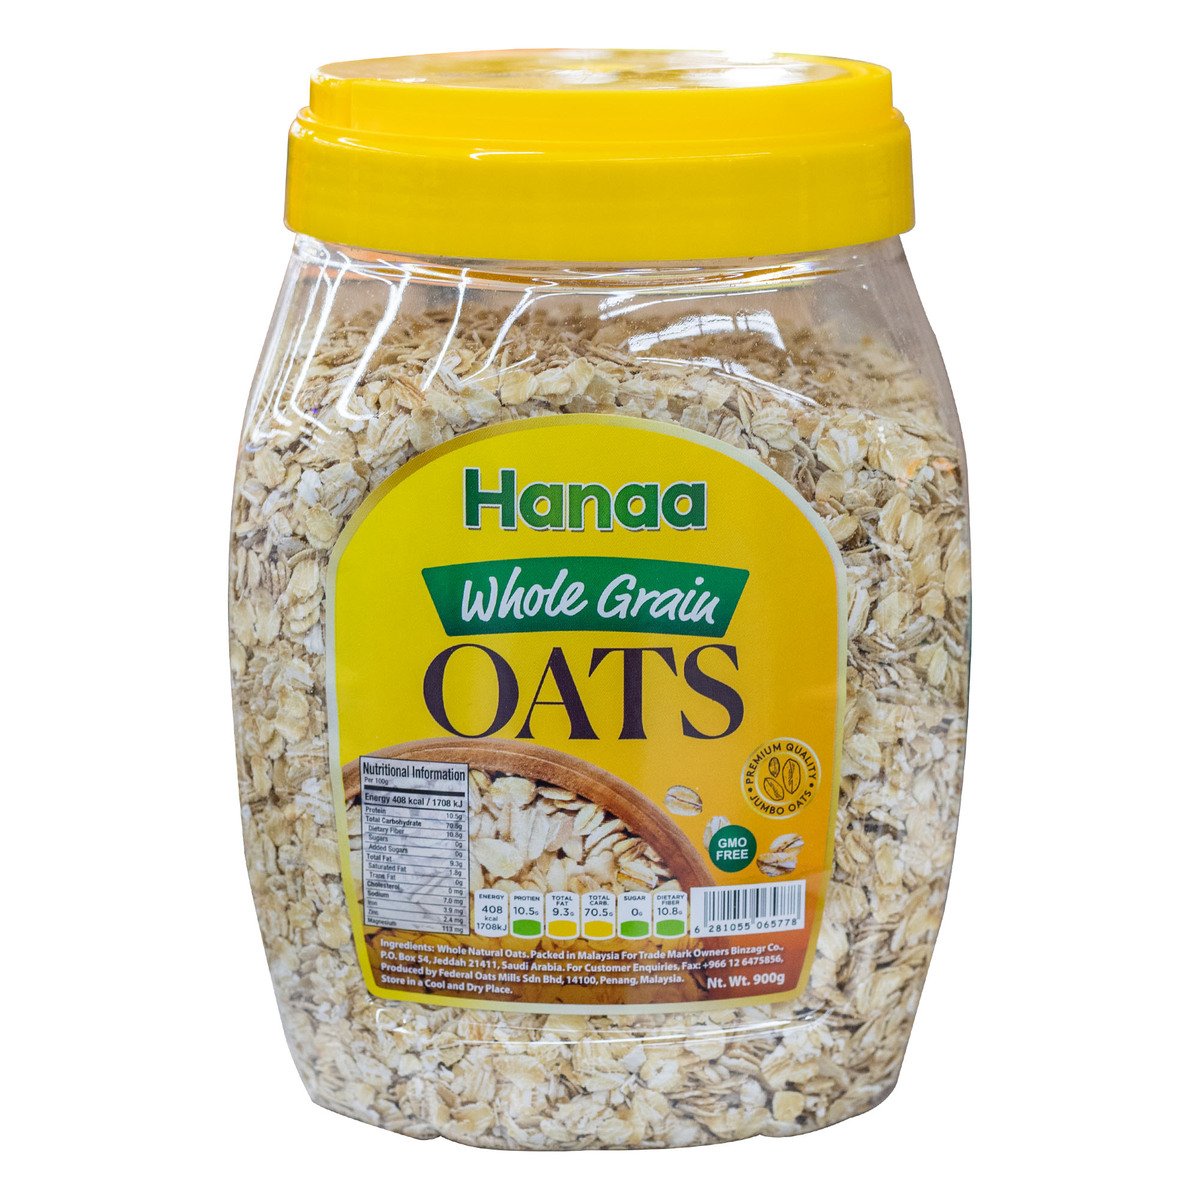 Hanaa Whole Grain Oats 900 g